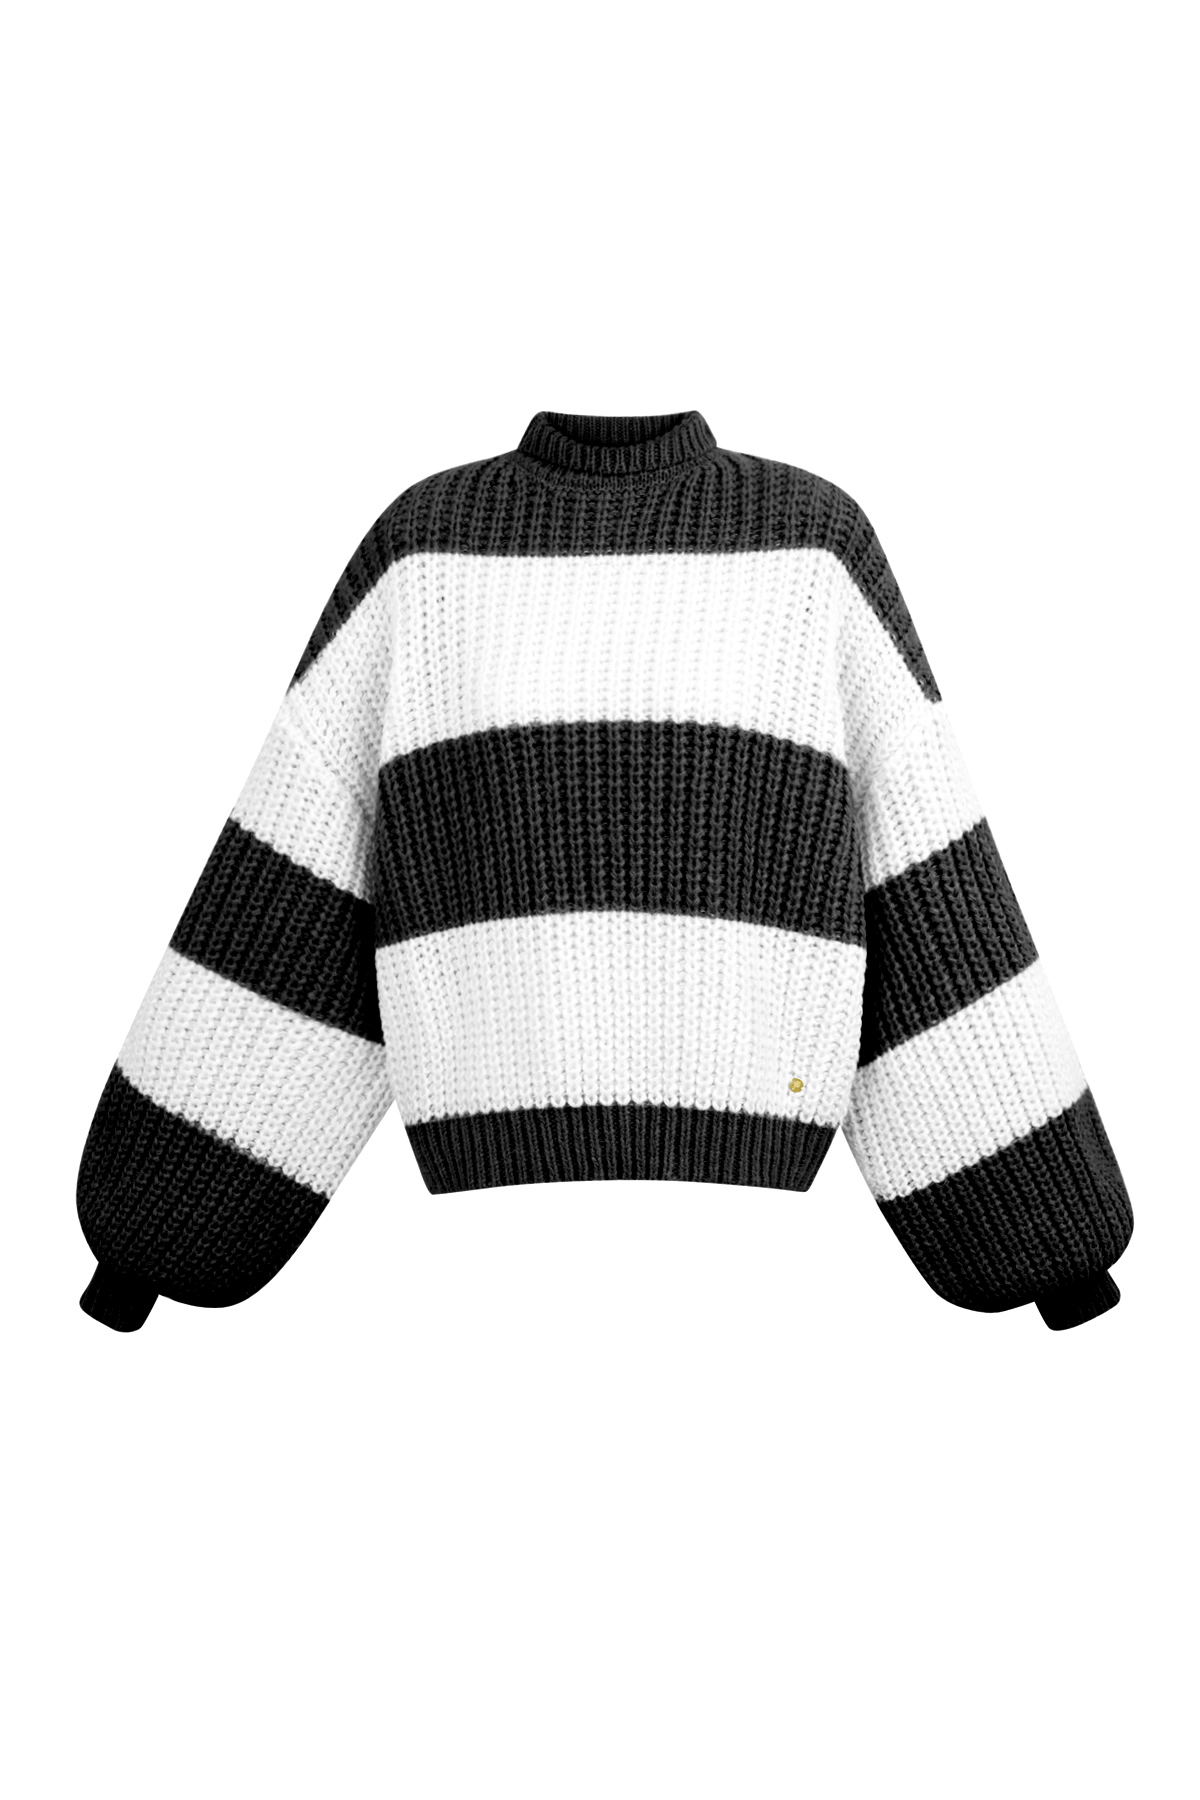 Caldo maglione a righe lavorato a maglia - bianco e nero 